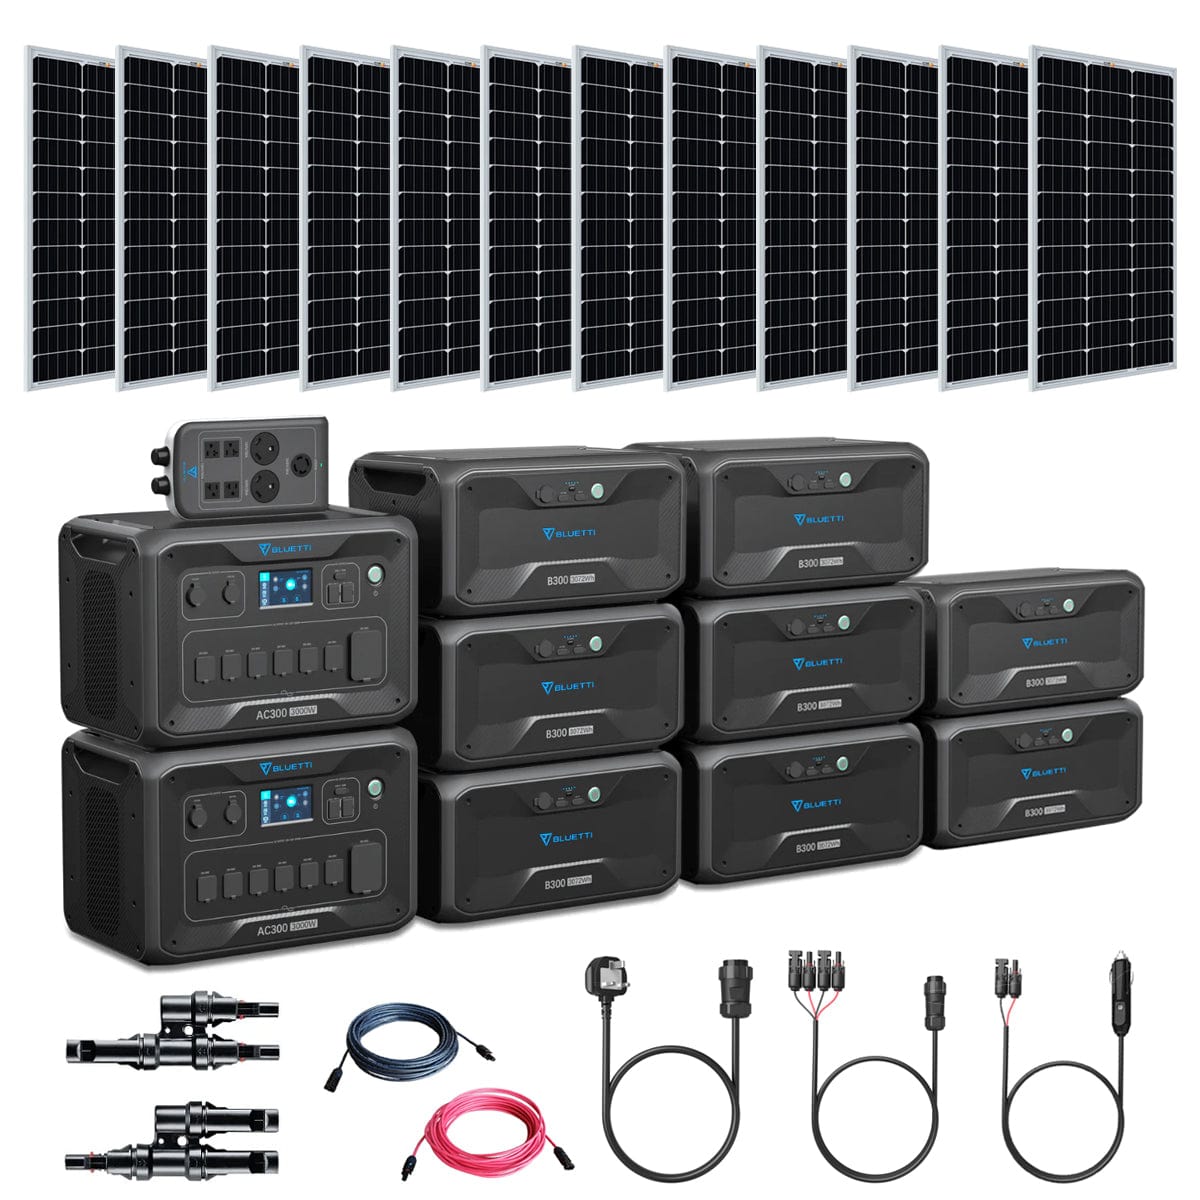 Bluetti AC300 6,000W/24.5kWh Solar Generator Kit | 12 x 200W 12V Rigid Mono Solar Panels | 24.5KwH Complete Solar Kit Bluetti AC300 Kits AC300